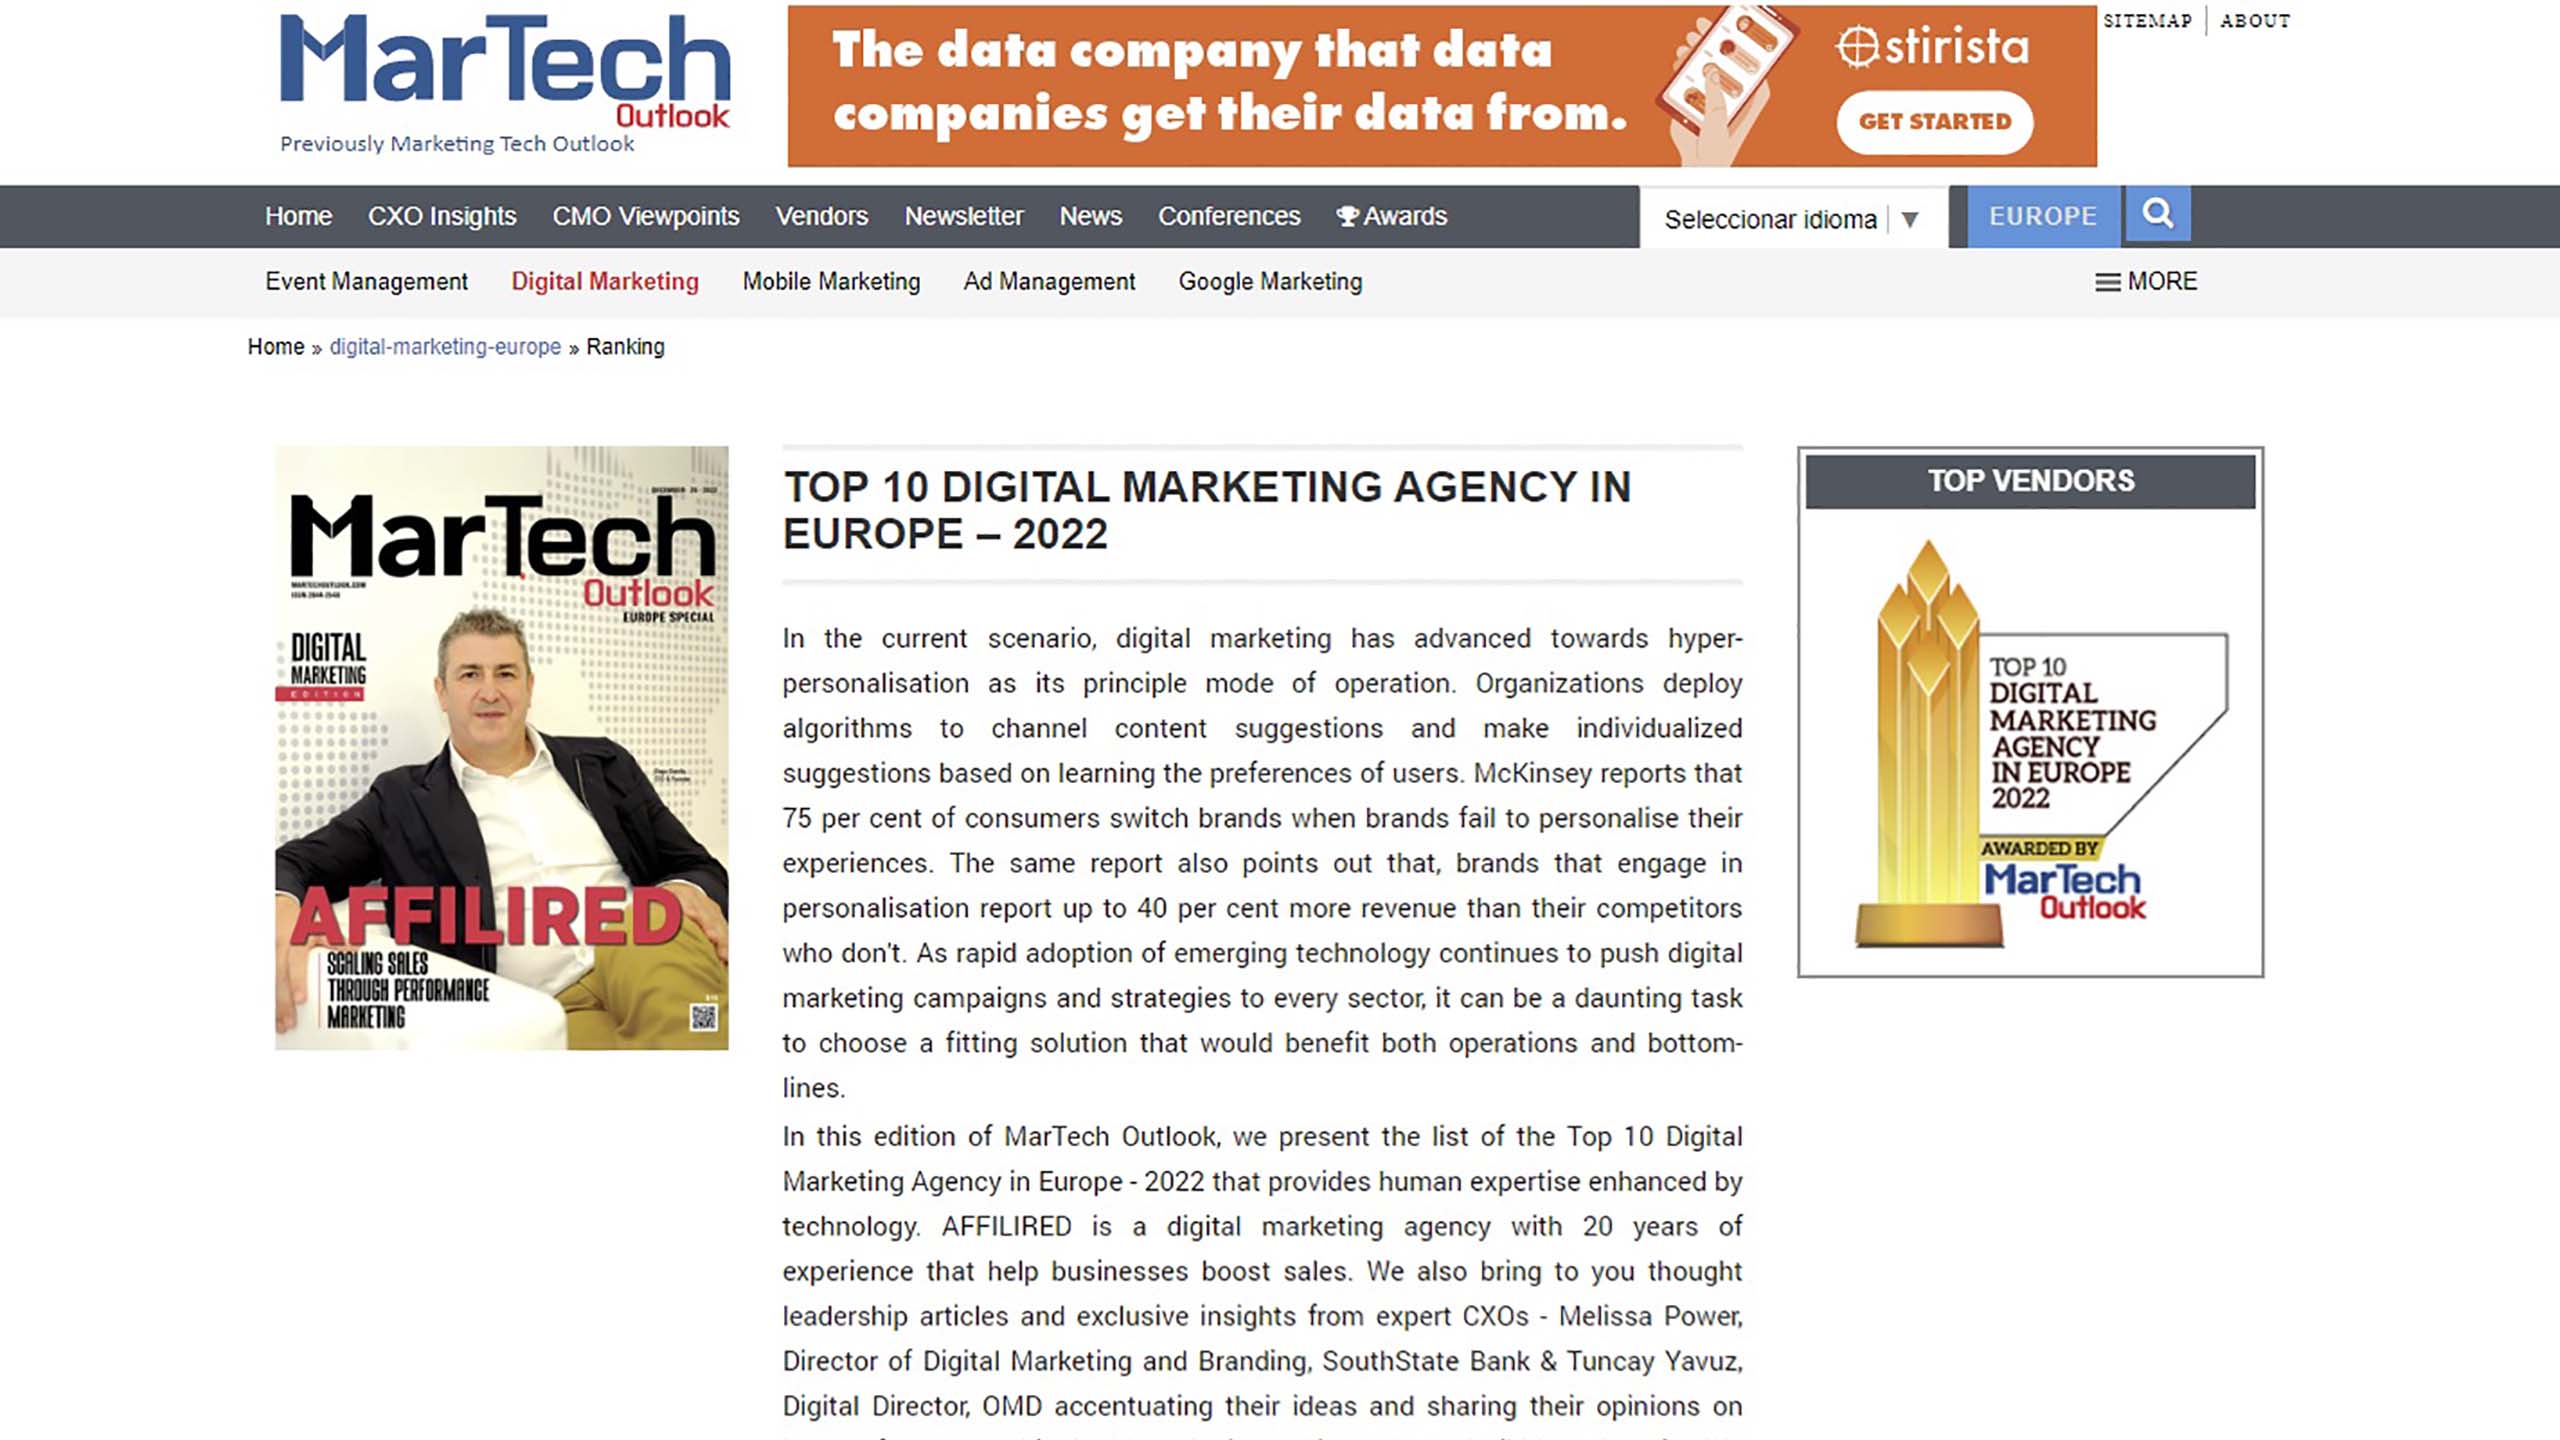 Top10-Digital-Marketing-Agency-in-Europe-2022